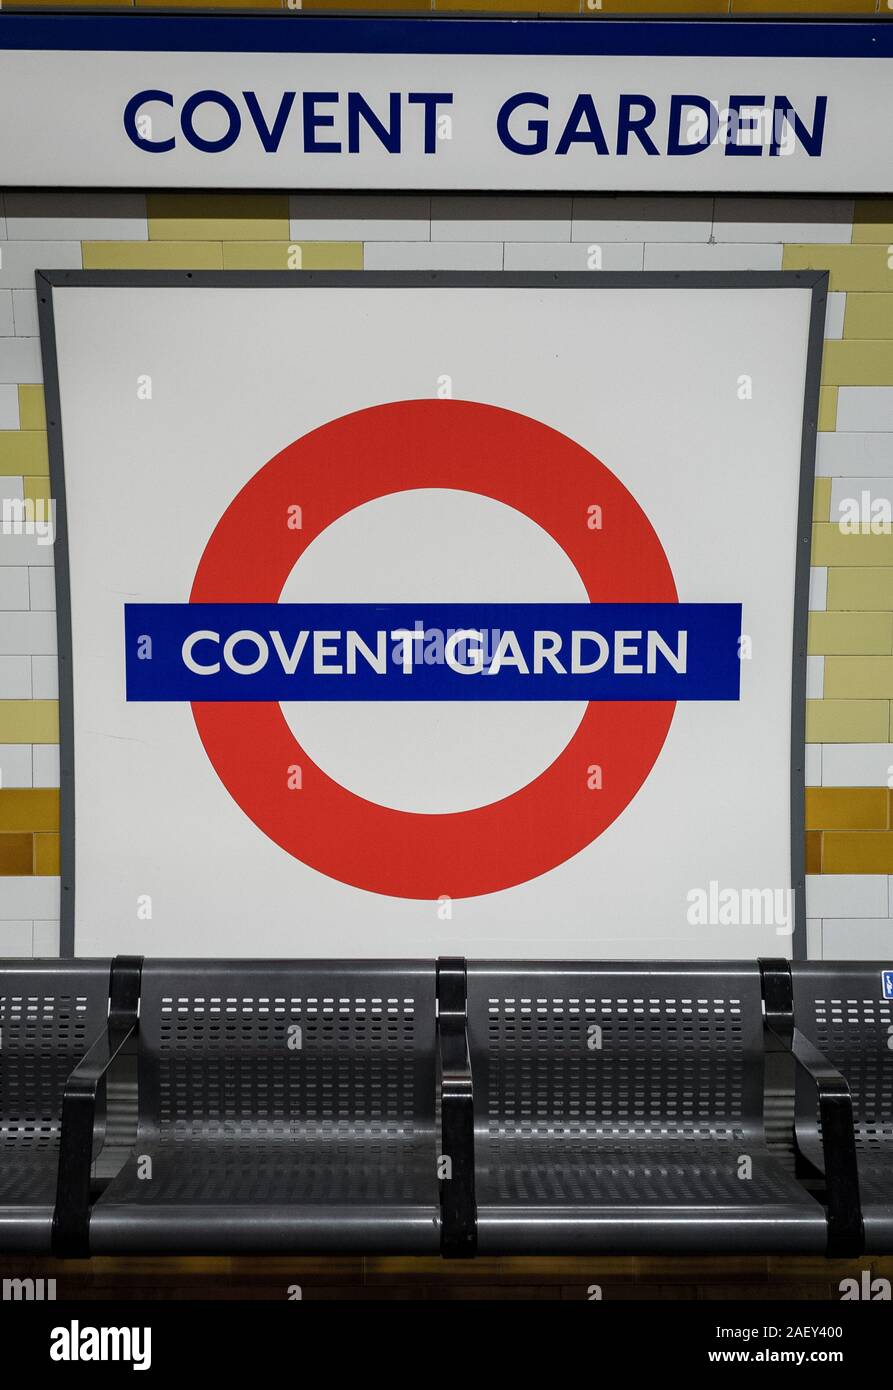 Covent Garden tube station. Eine Plattform für die Londoner U-Bahn Station zu den beliebten touristischen Ort auf der Piccadilly Line. Stockfoto